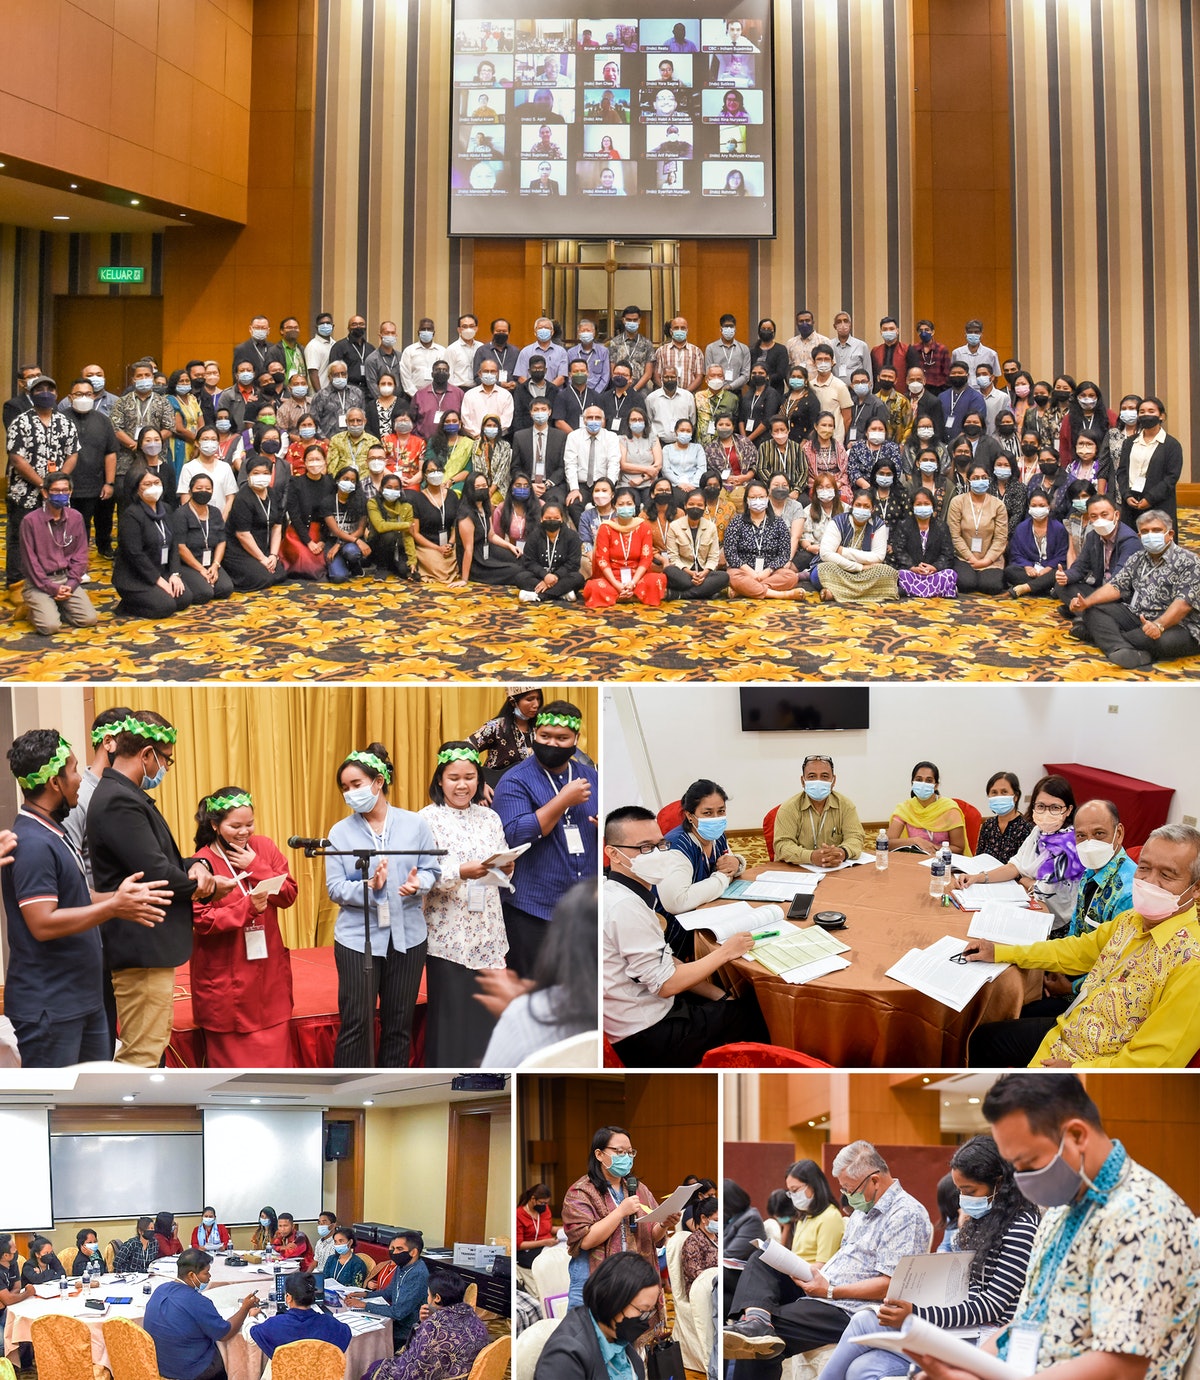 Un rassemblement en Malaisie a réuni des participants de ce pays ainsi que de divers autres pays d’Asie du Sud-Est, dont Brunei, l’Indonésie, Singapour qui se sont joints à distance par vidéoconférence.